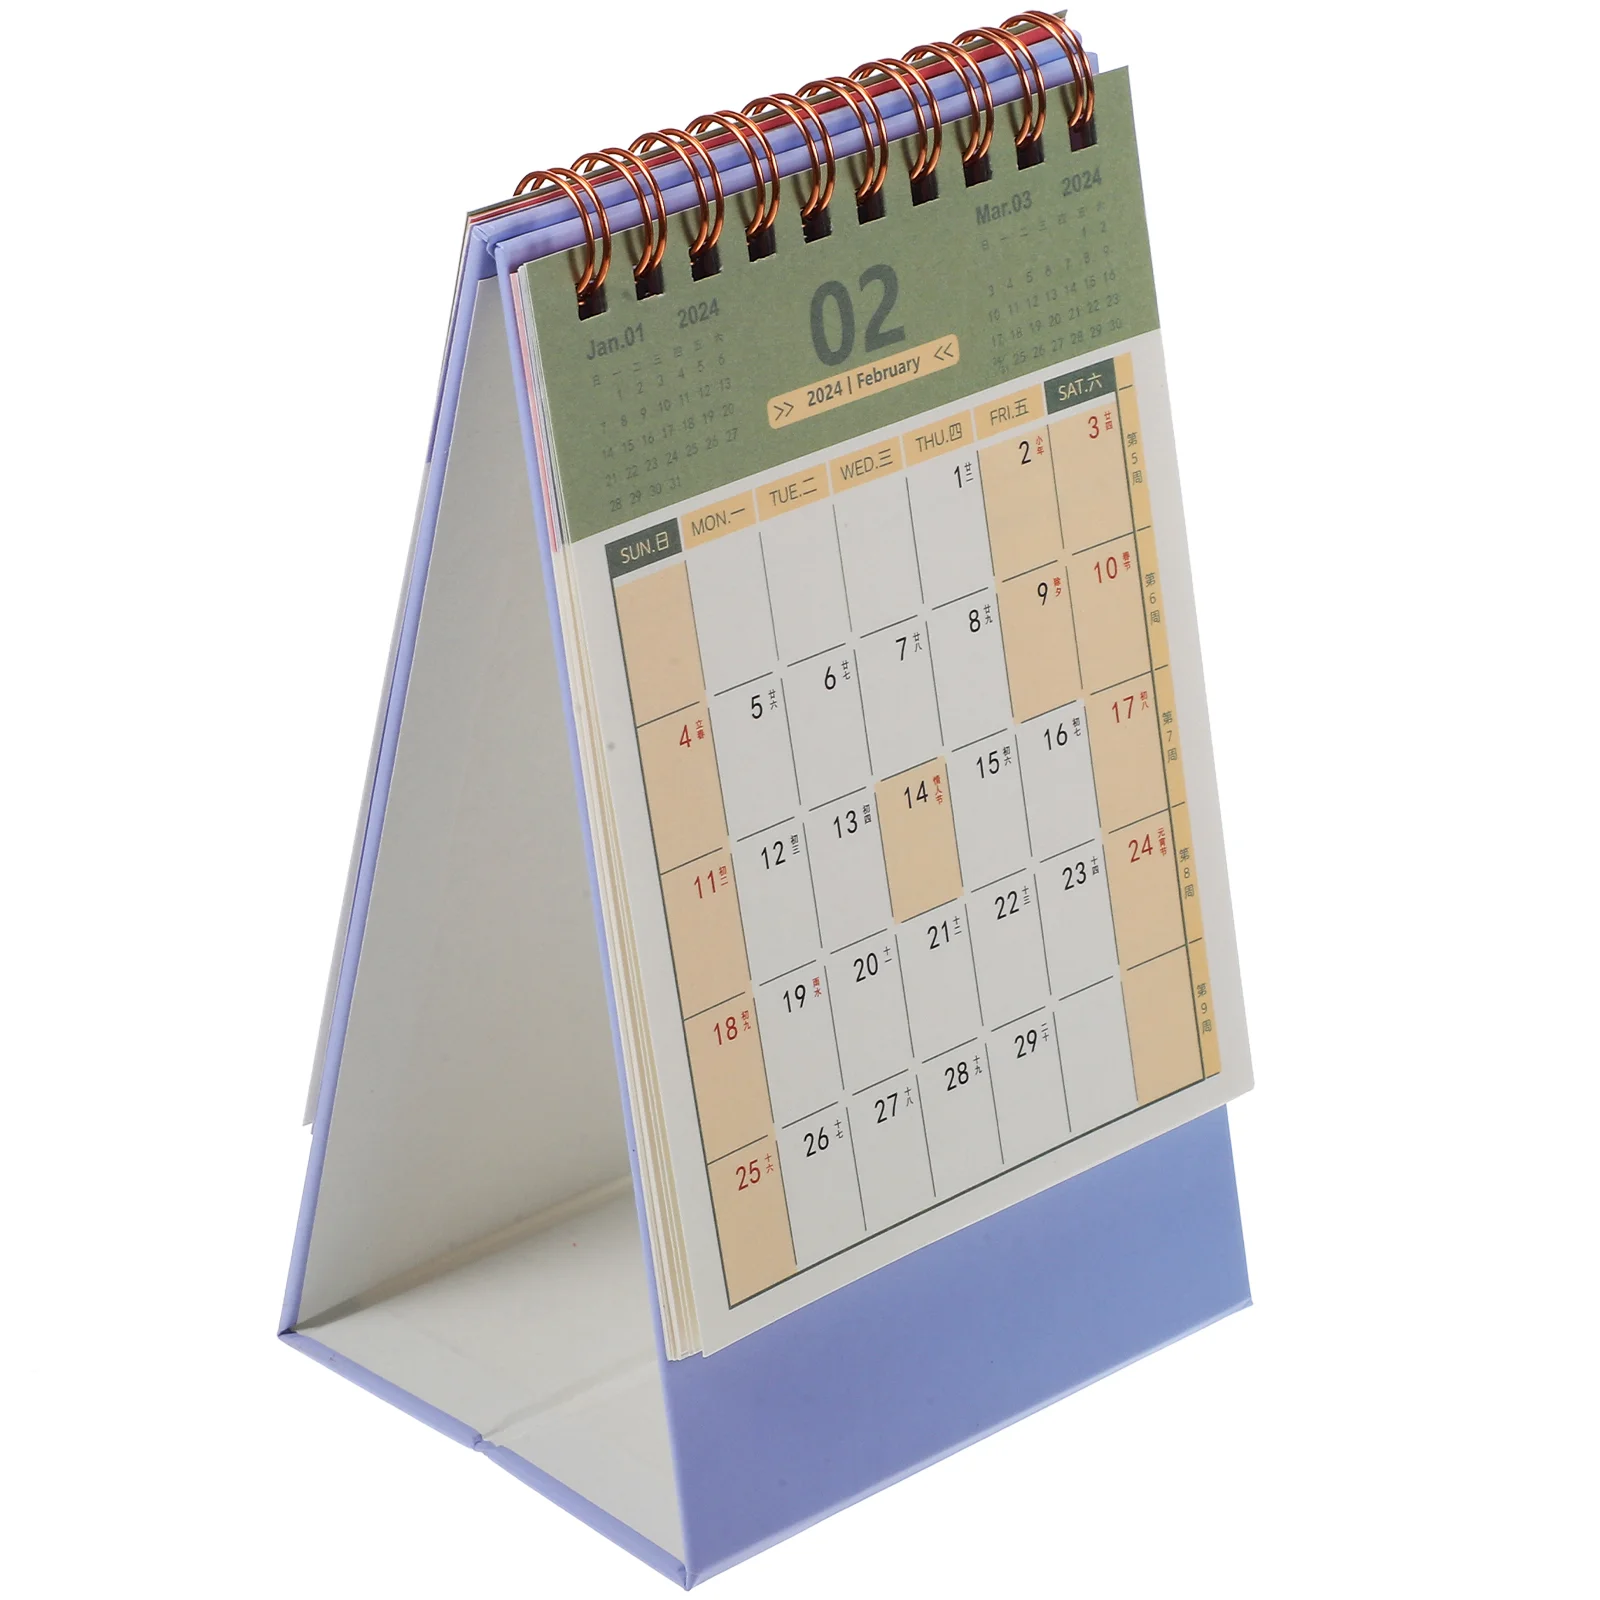 

Календарь для рабочего стола, календарь для рабочего стола, календарь для домашнего стола, календарь для дома, аксессуары для дома